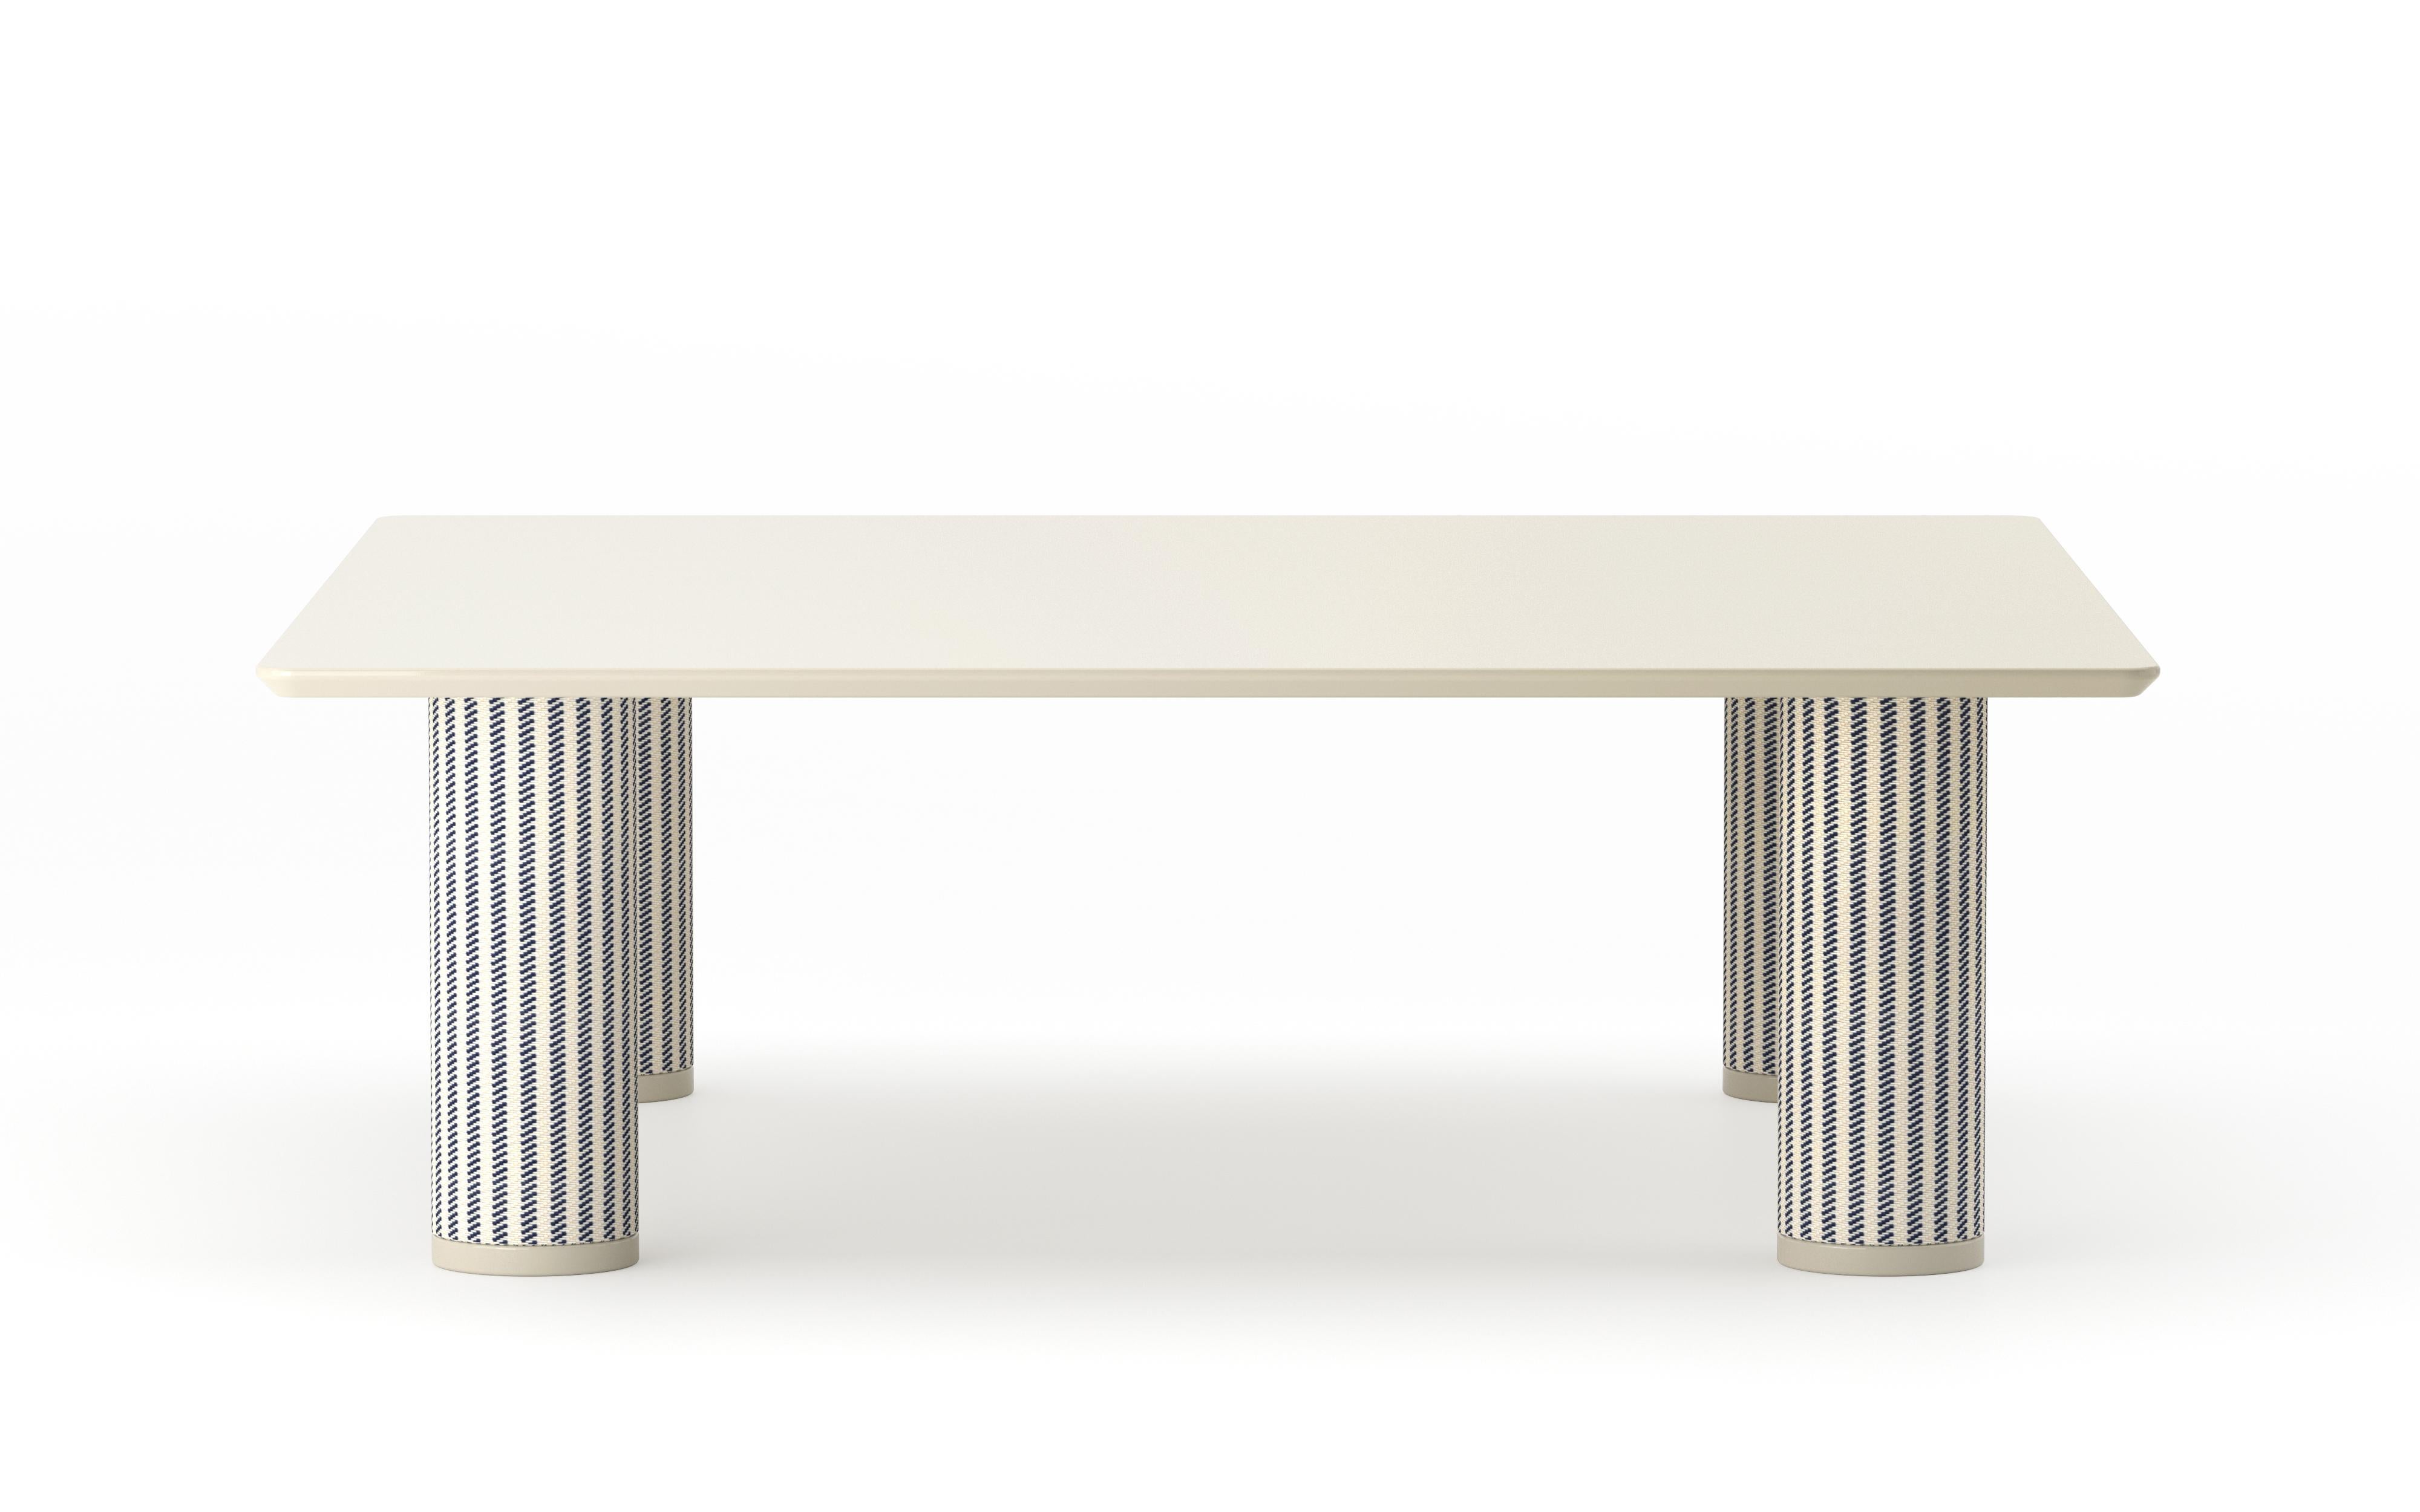 UMA Square est une table basse de la collection du même nom conçue par Ludovica+Roberto Palomba pour P + C Edizioni au printemps 2022. Mesures : 90x90x30 cm.
Dotée d'un plateau carré en résine, UMA Square met l'accent sur le design des pieds